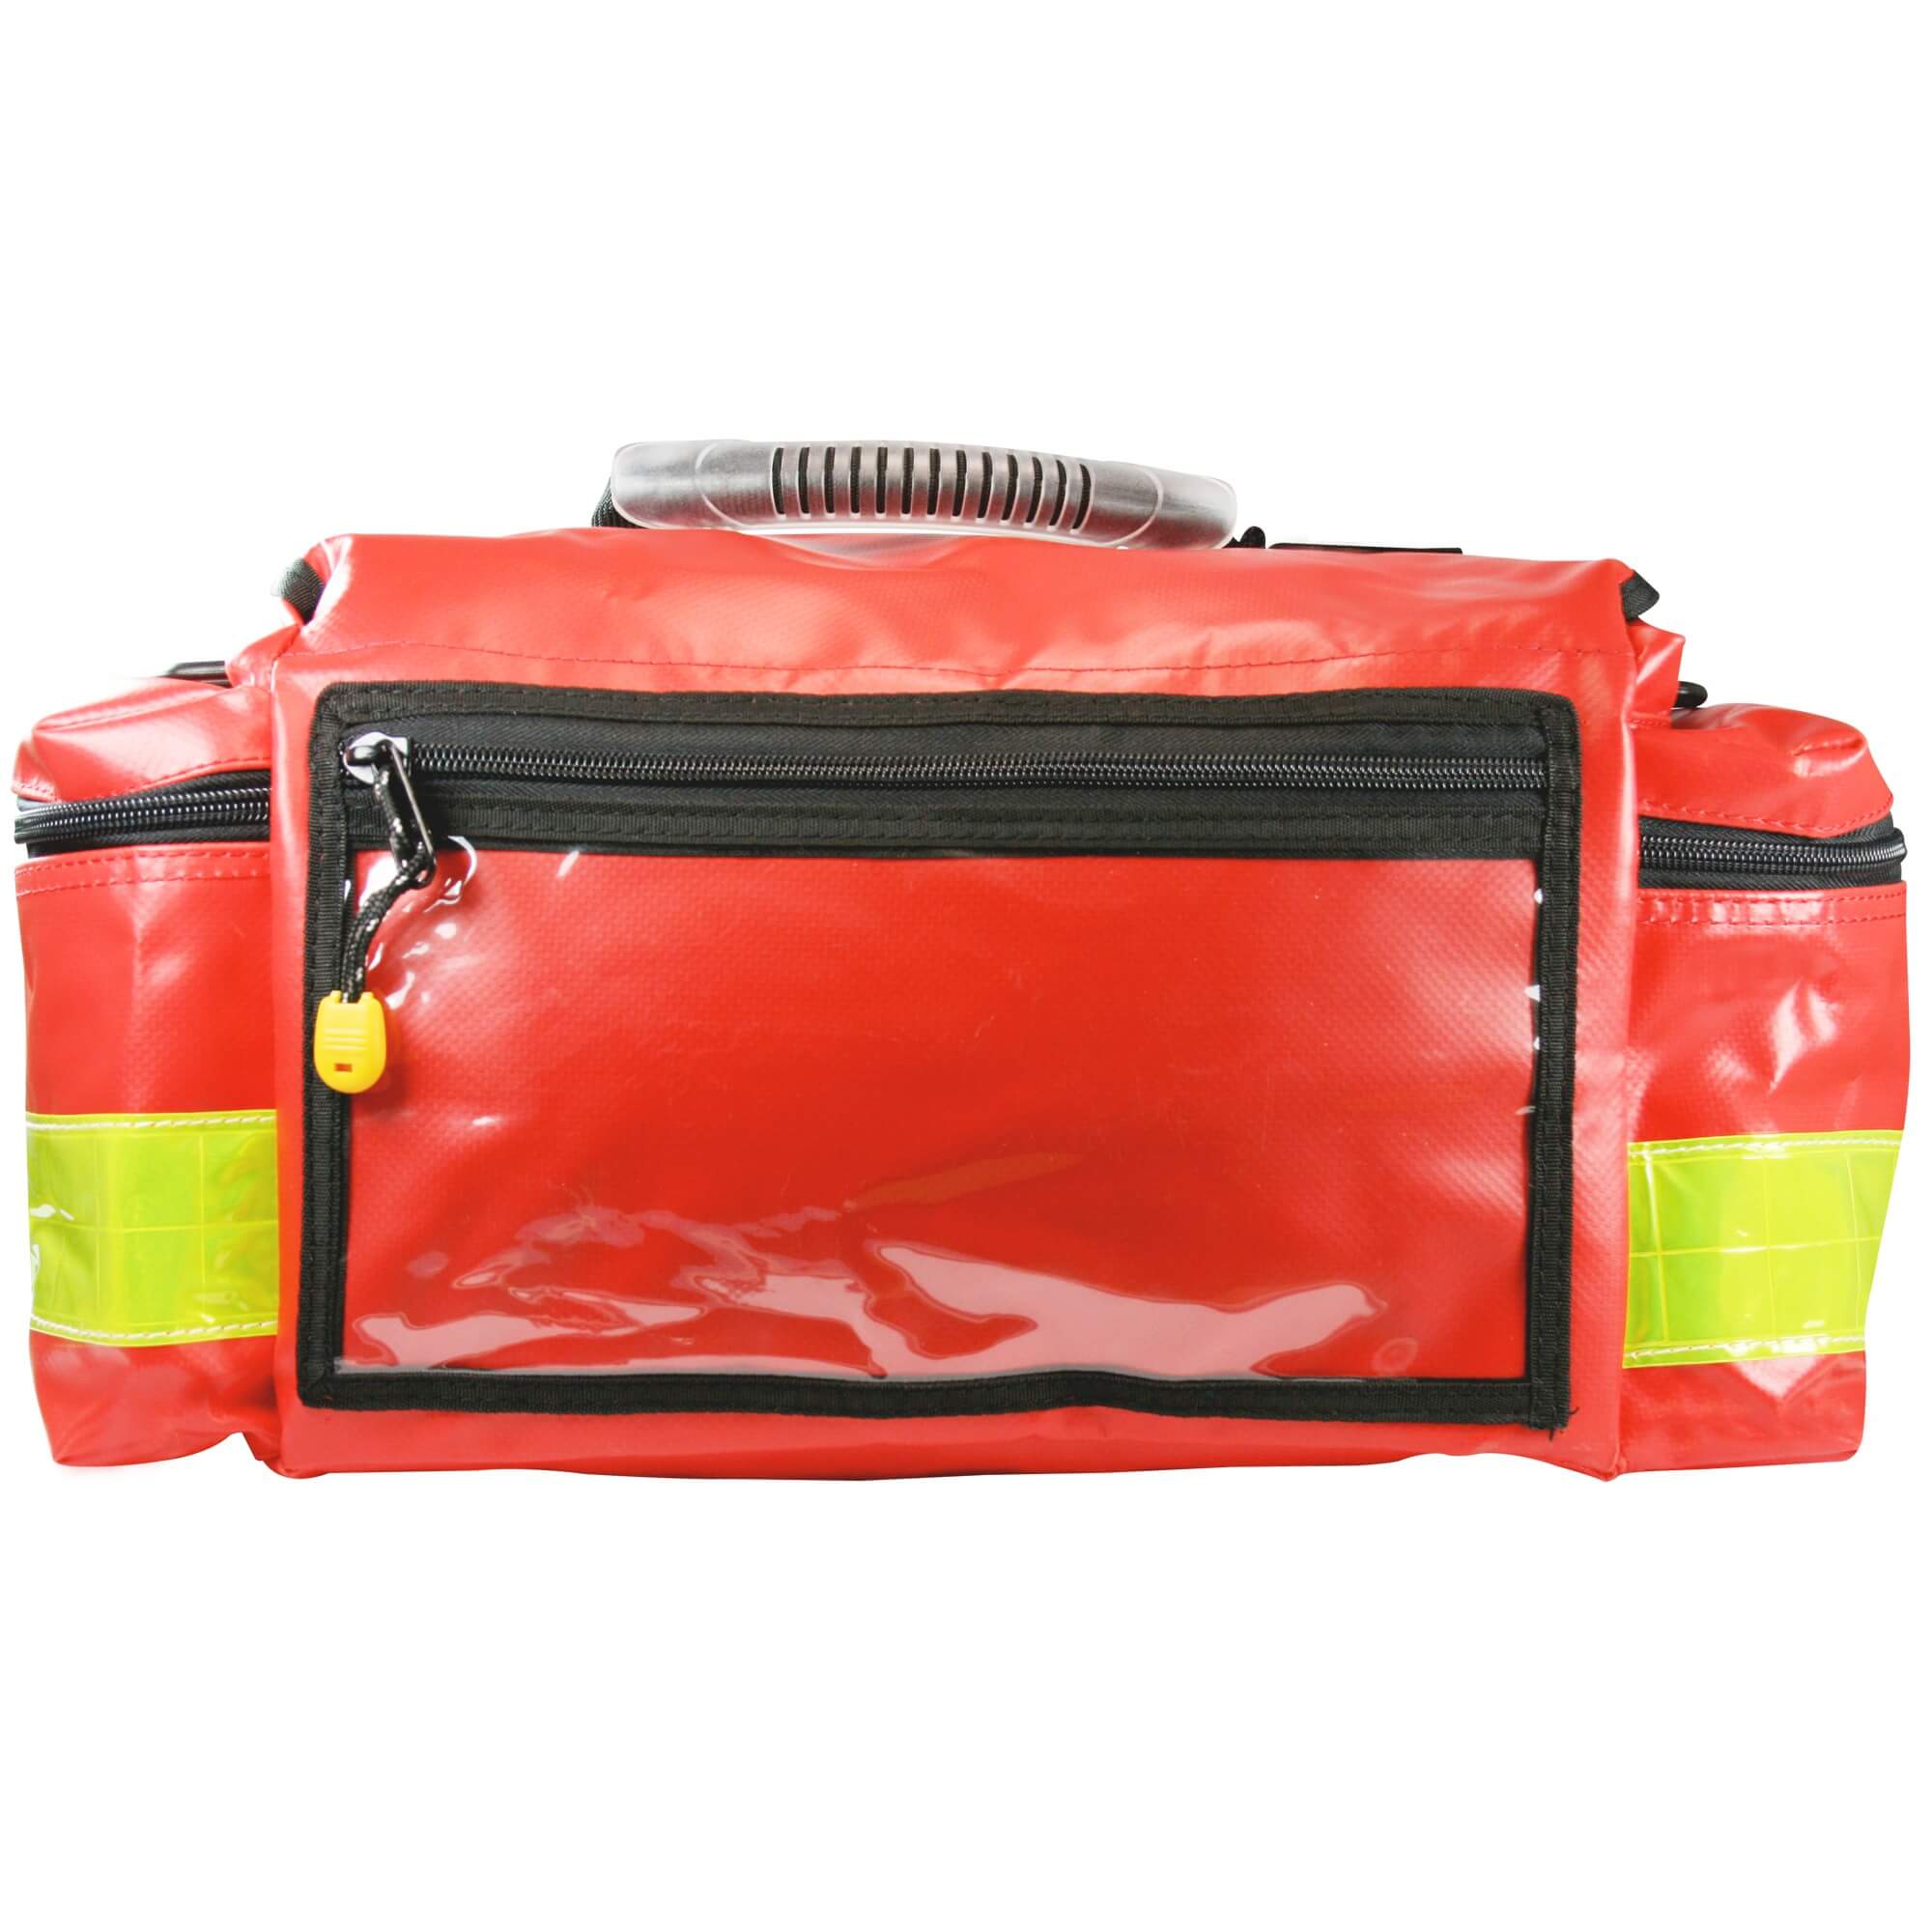 MINISTER S Rot Plane. Die handliche Notfalltasche für den schnellen Einsatz.Maße: 43 x 25 x 18 cm.Hochwertige Verarbeitung,widerstandsfähiges,wasserabweisendes und desinfizierbares Planenmaterial,verstärkte Seitenwände.